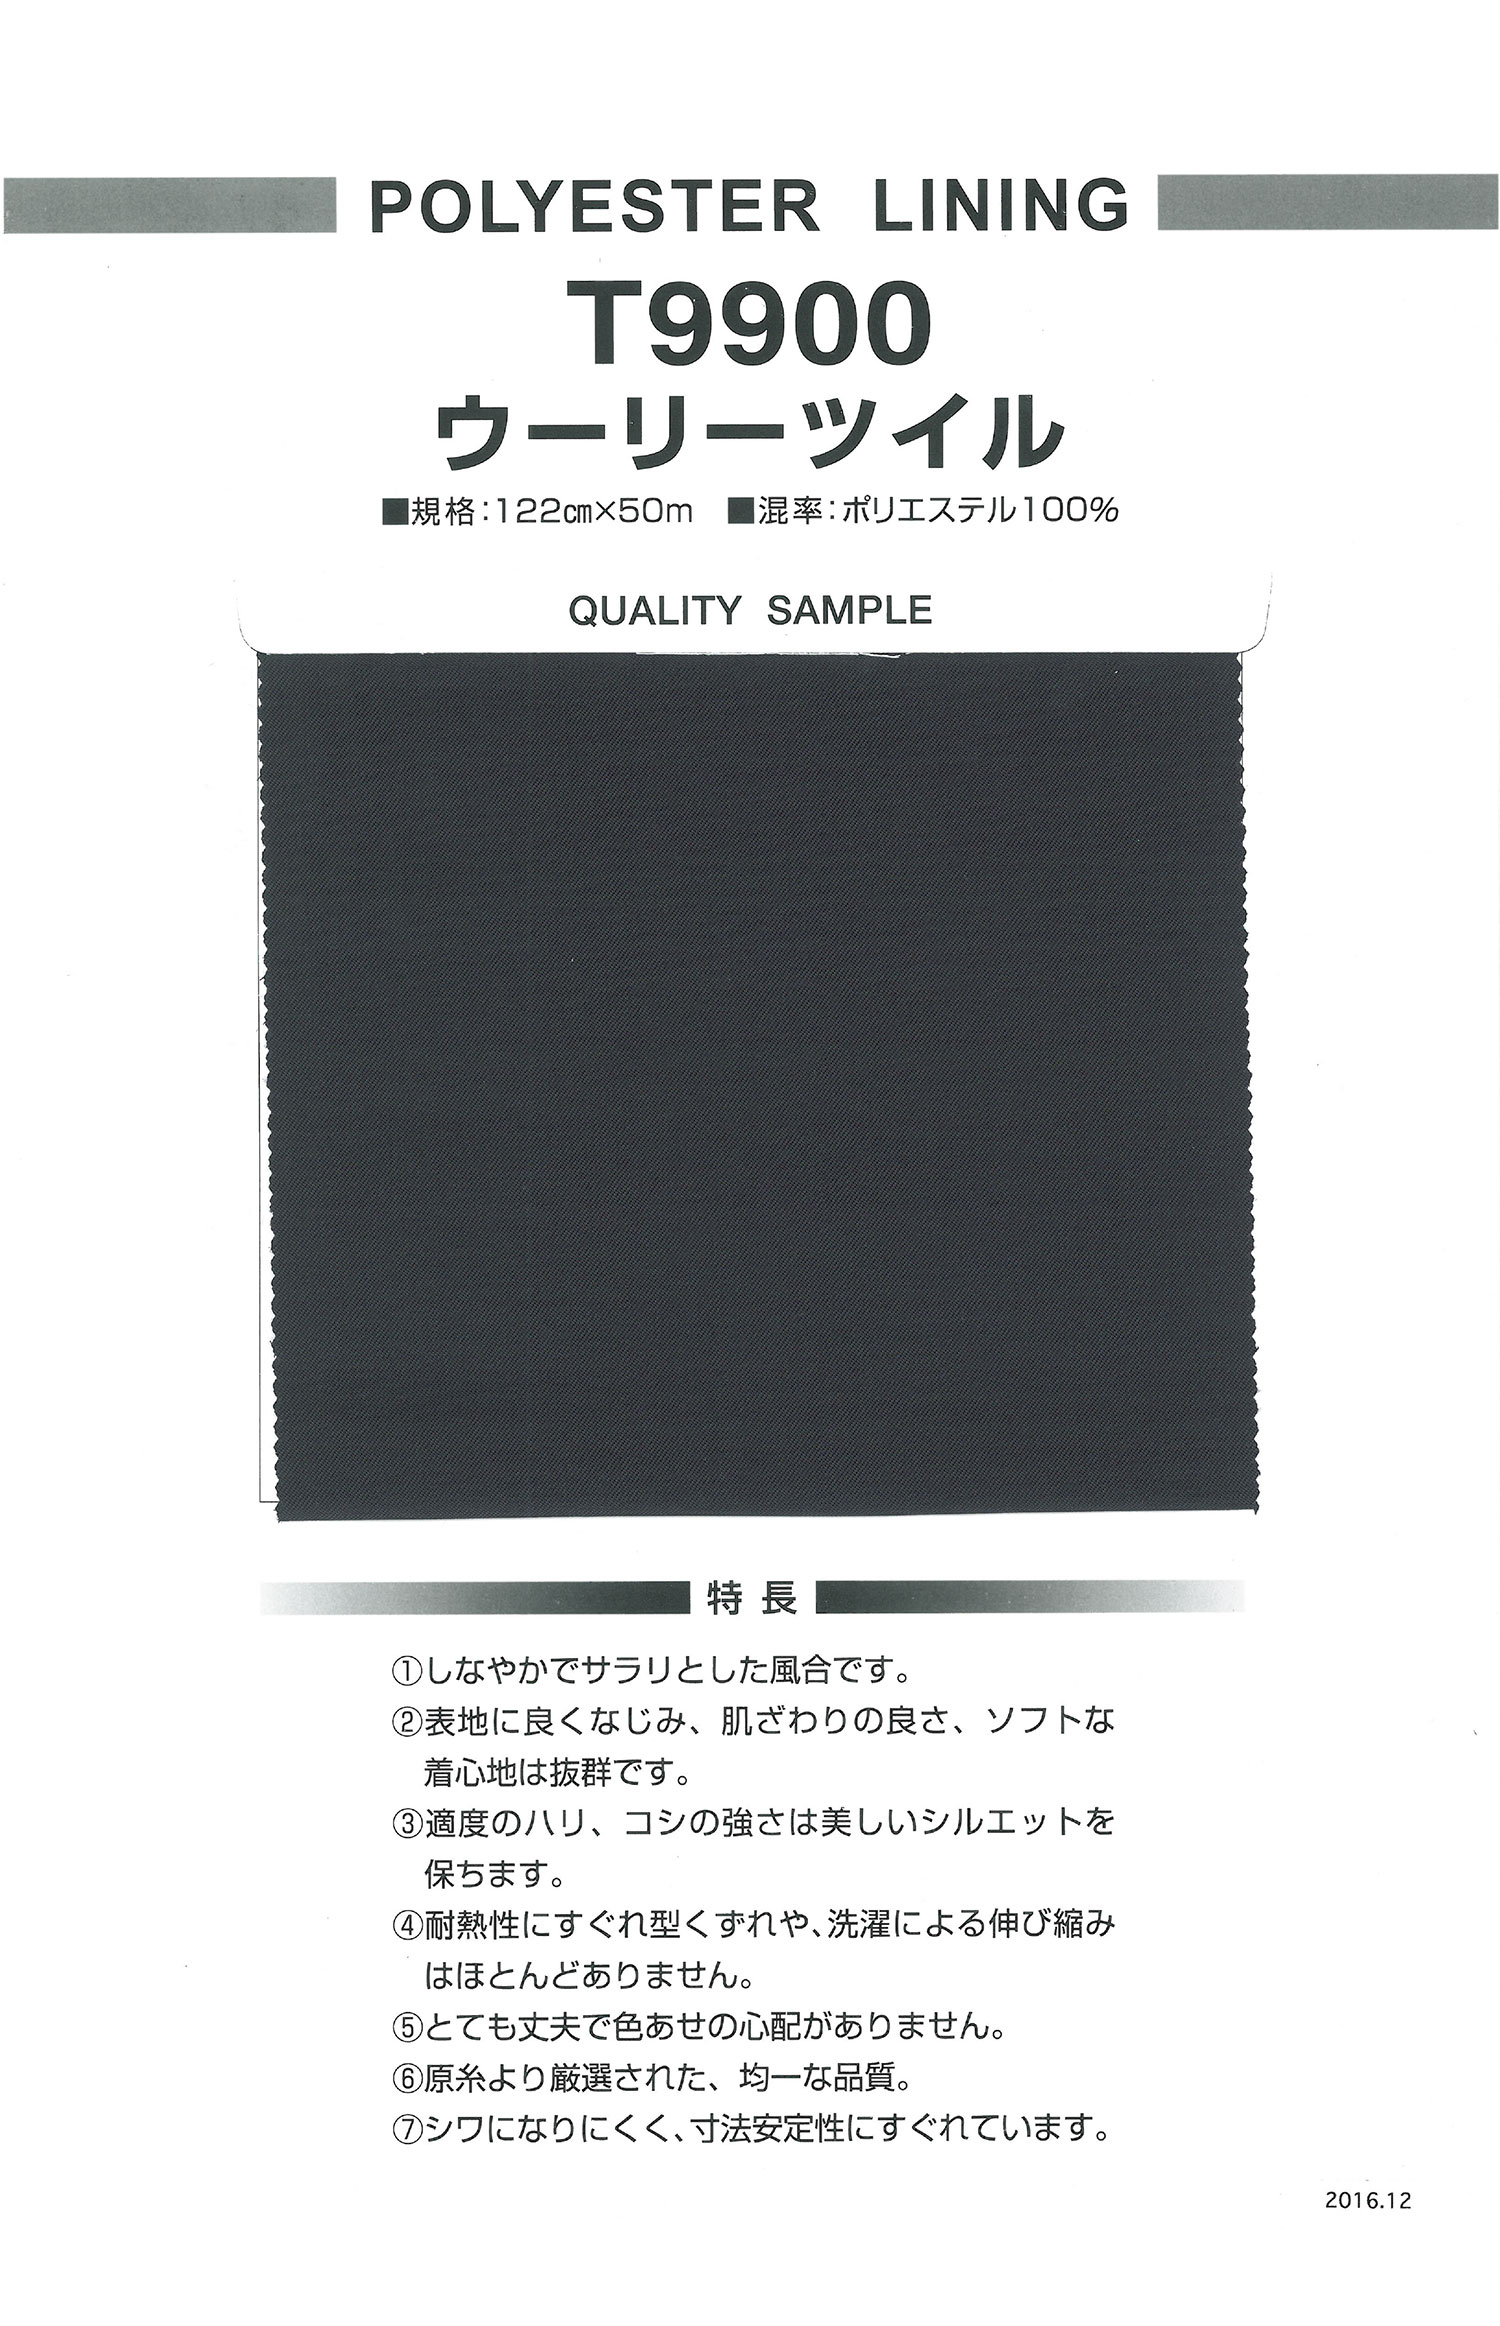 T9900 Woolly Twill[Vải Lót] Nishiyama